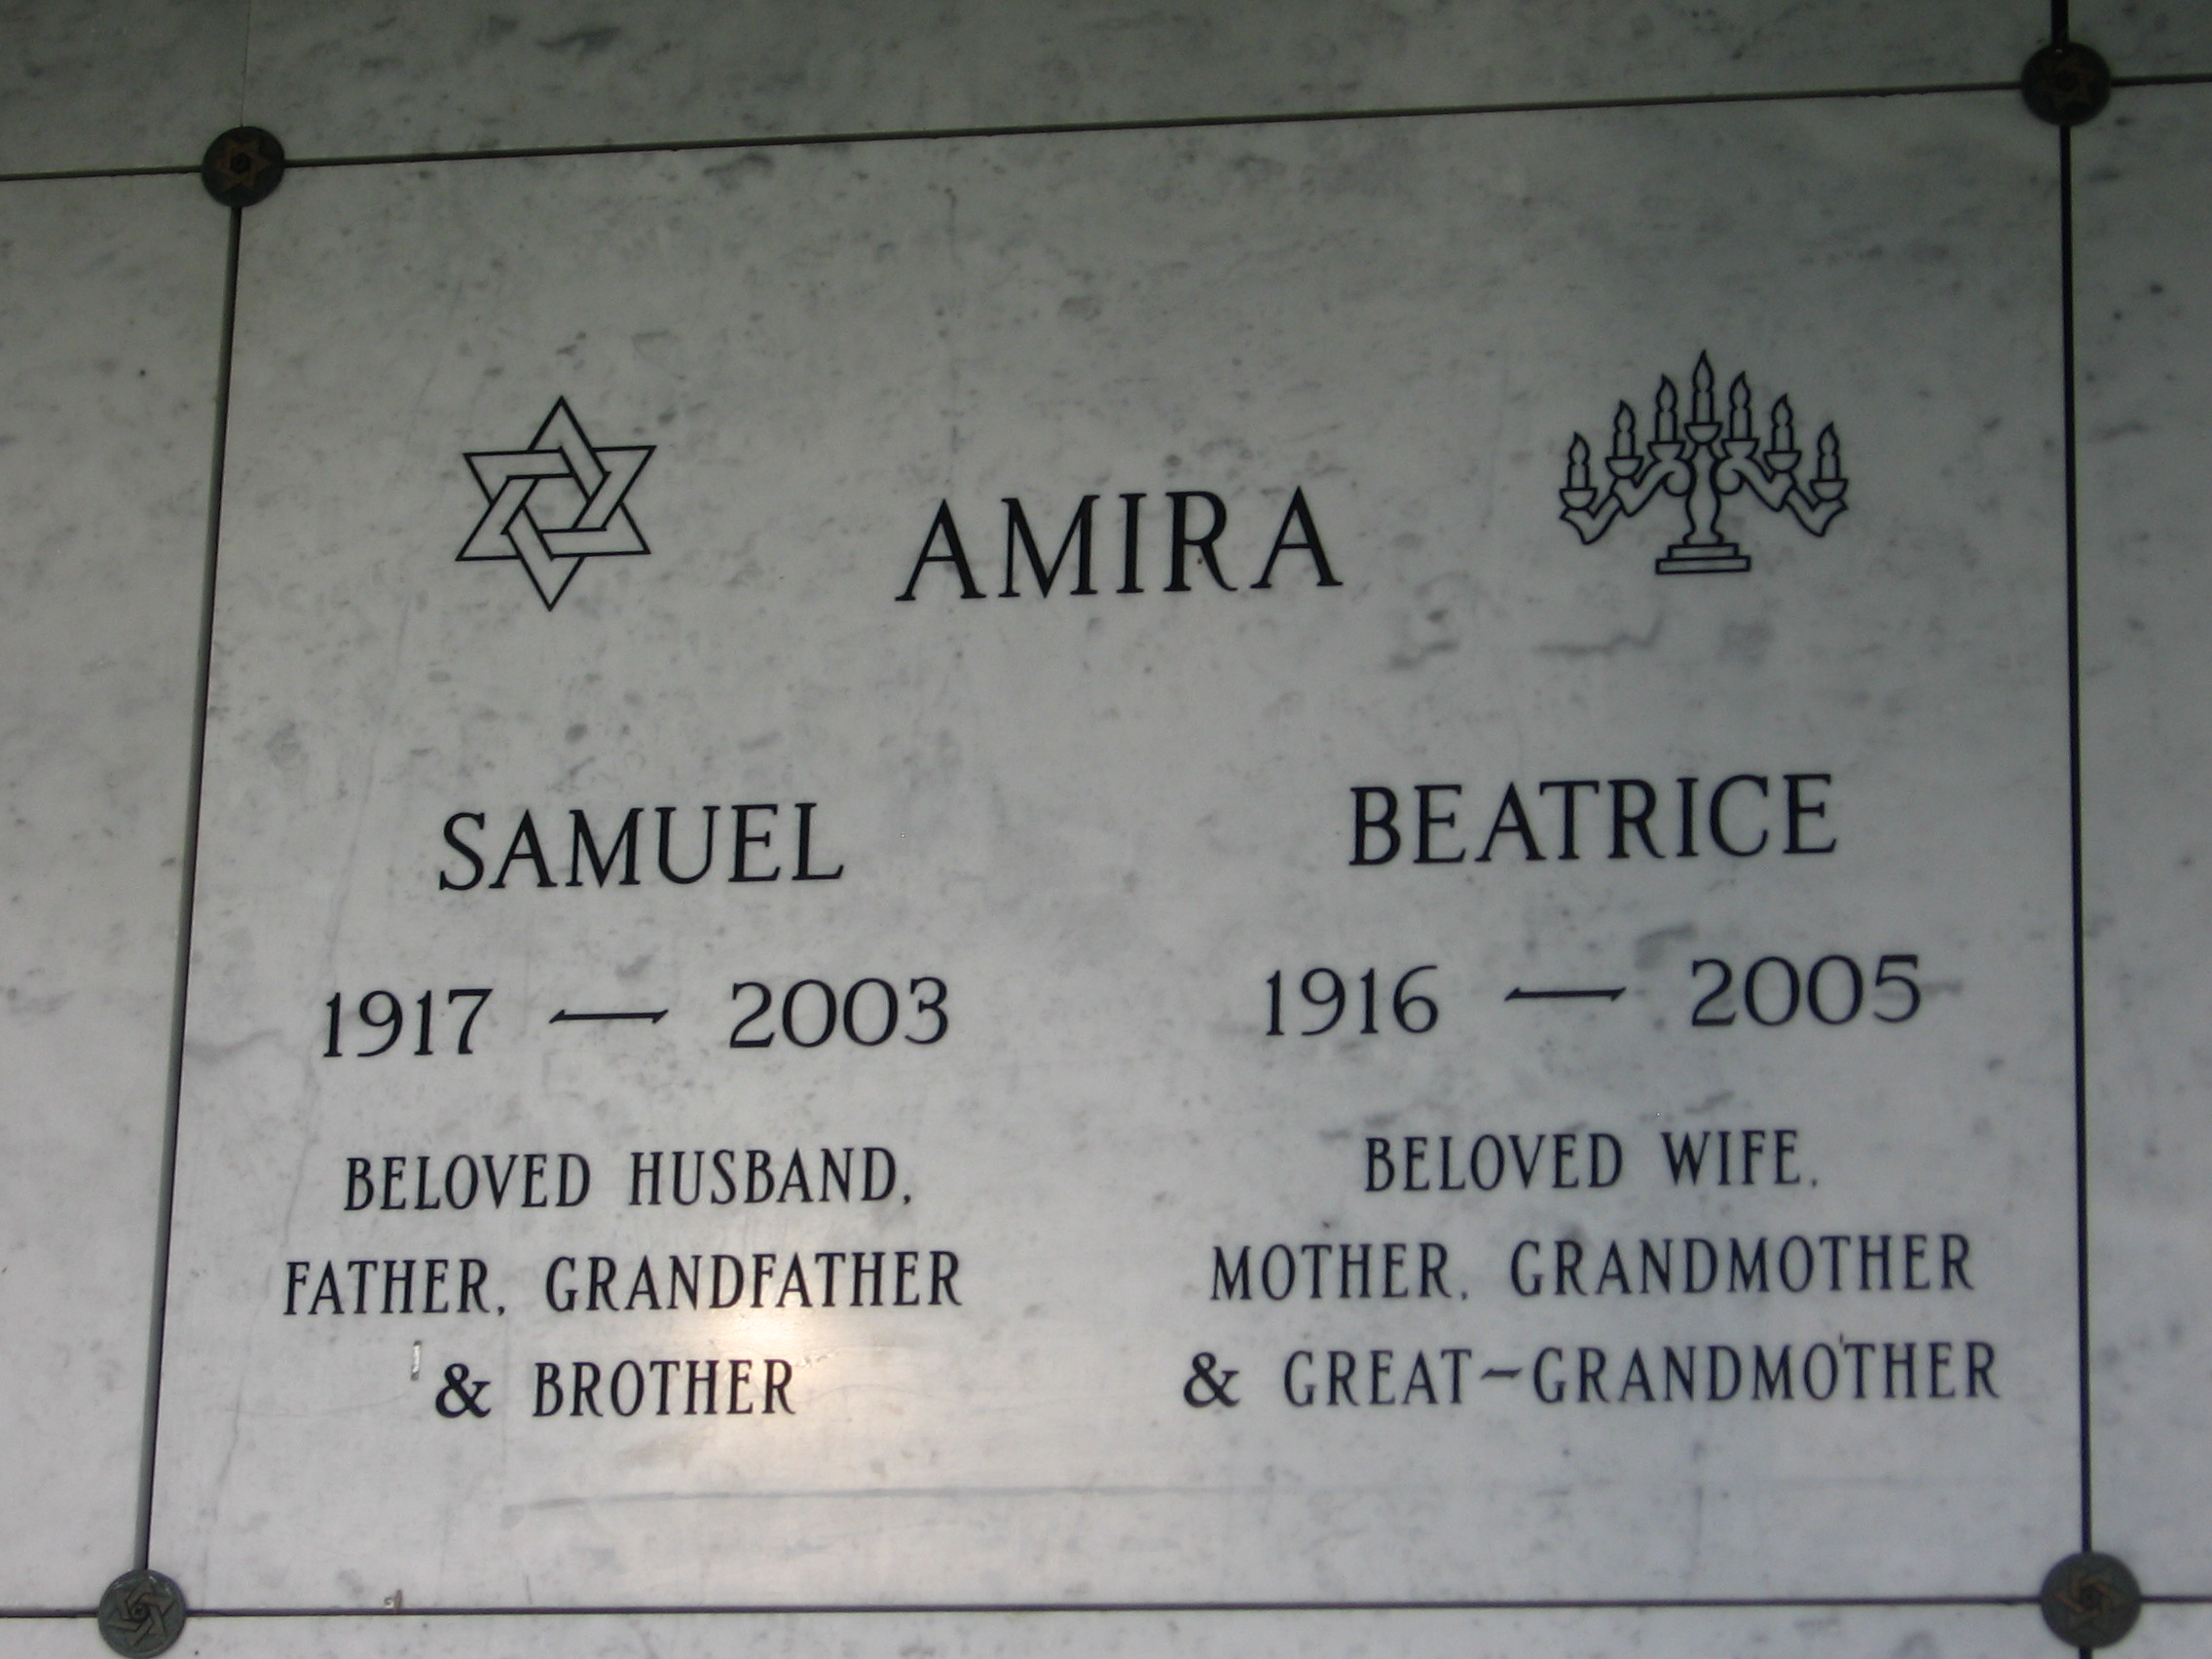 Beatrice Amira